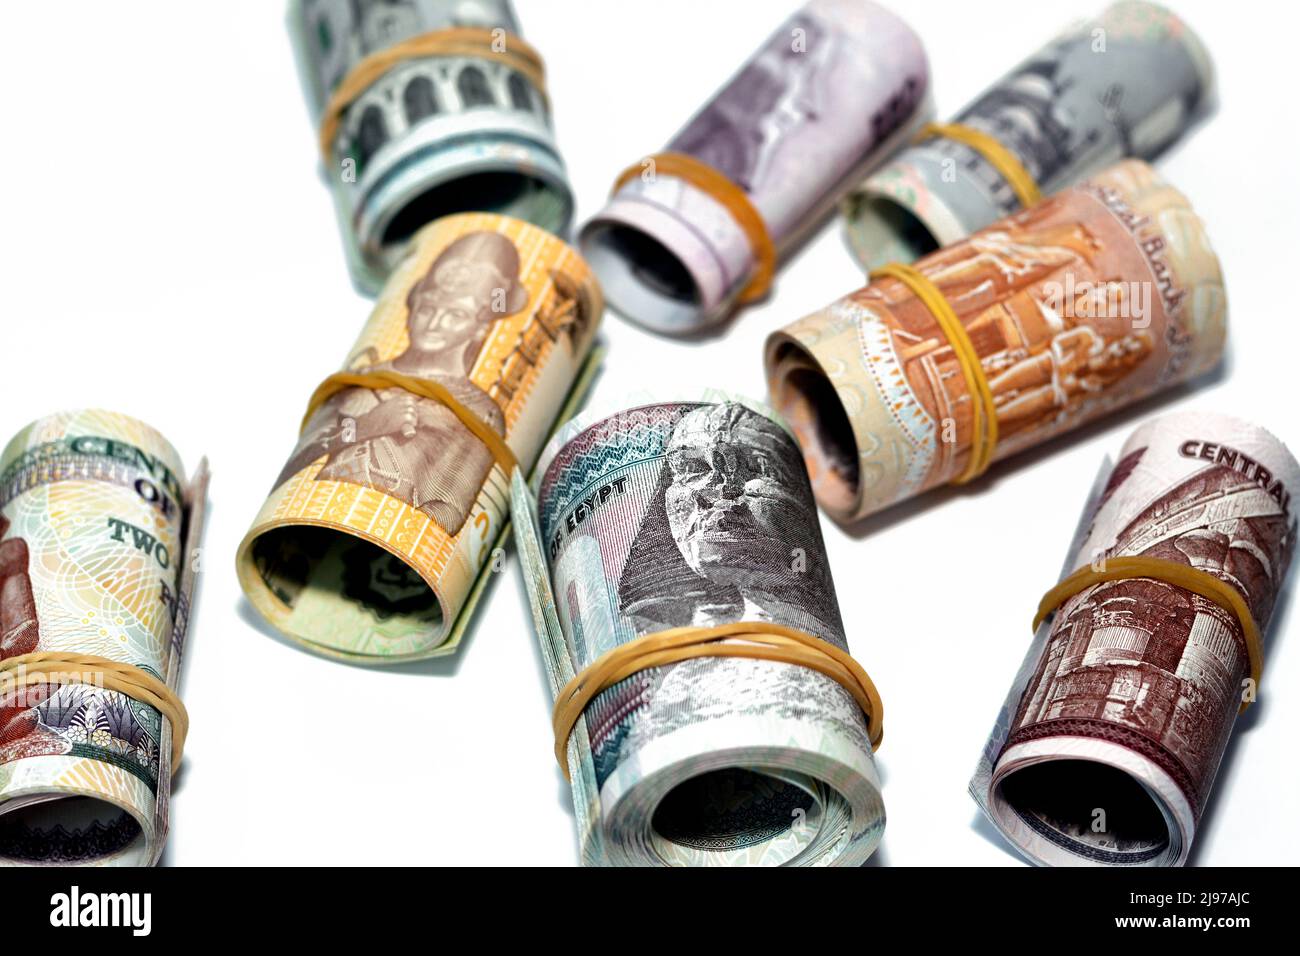 Pacchetti di denaro egiziano rotolare banconote valuta isolato su sfondo bianco, egiziano sterline banconote in denaro rotolato con fasce di gomma, sele Foto Stock